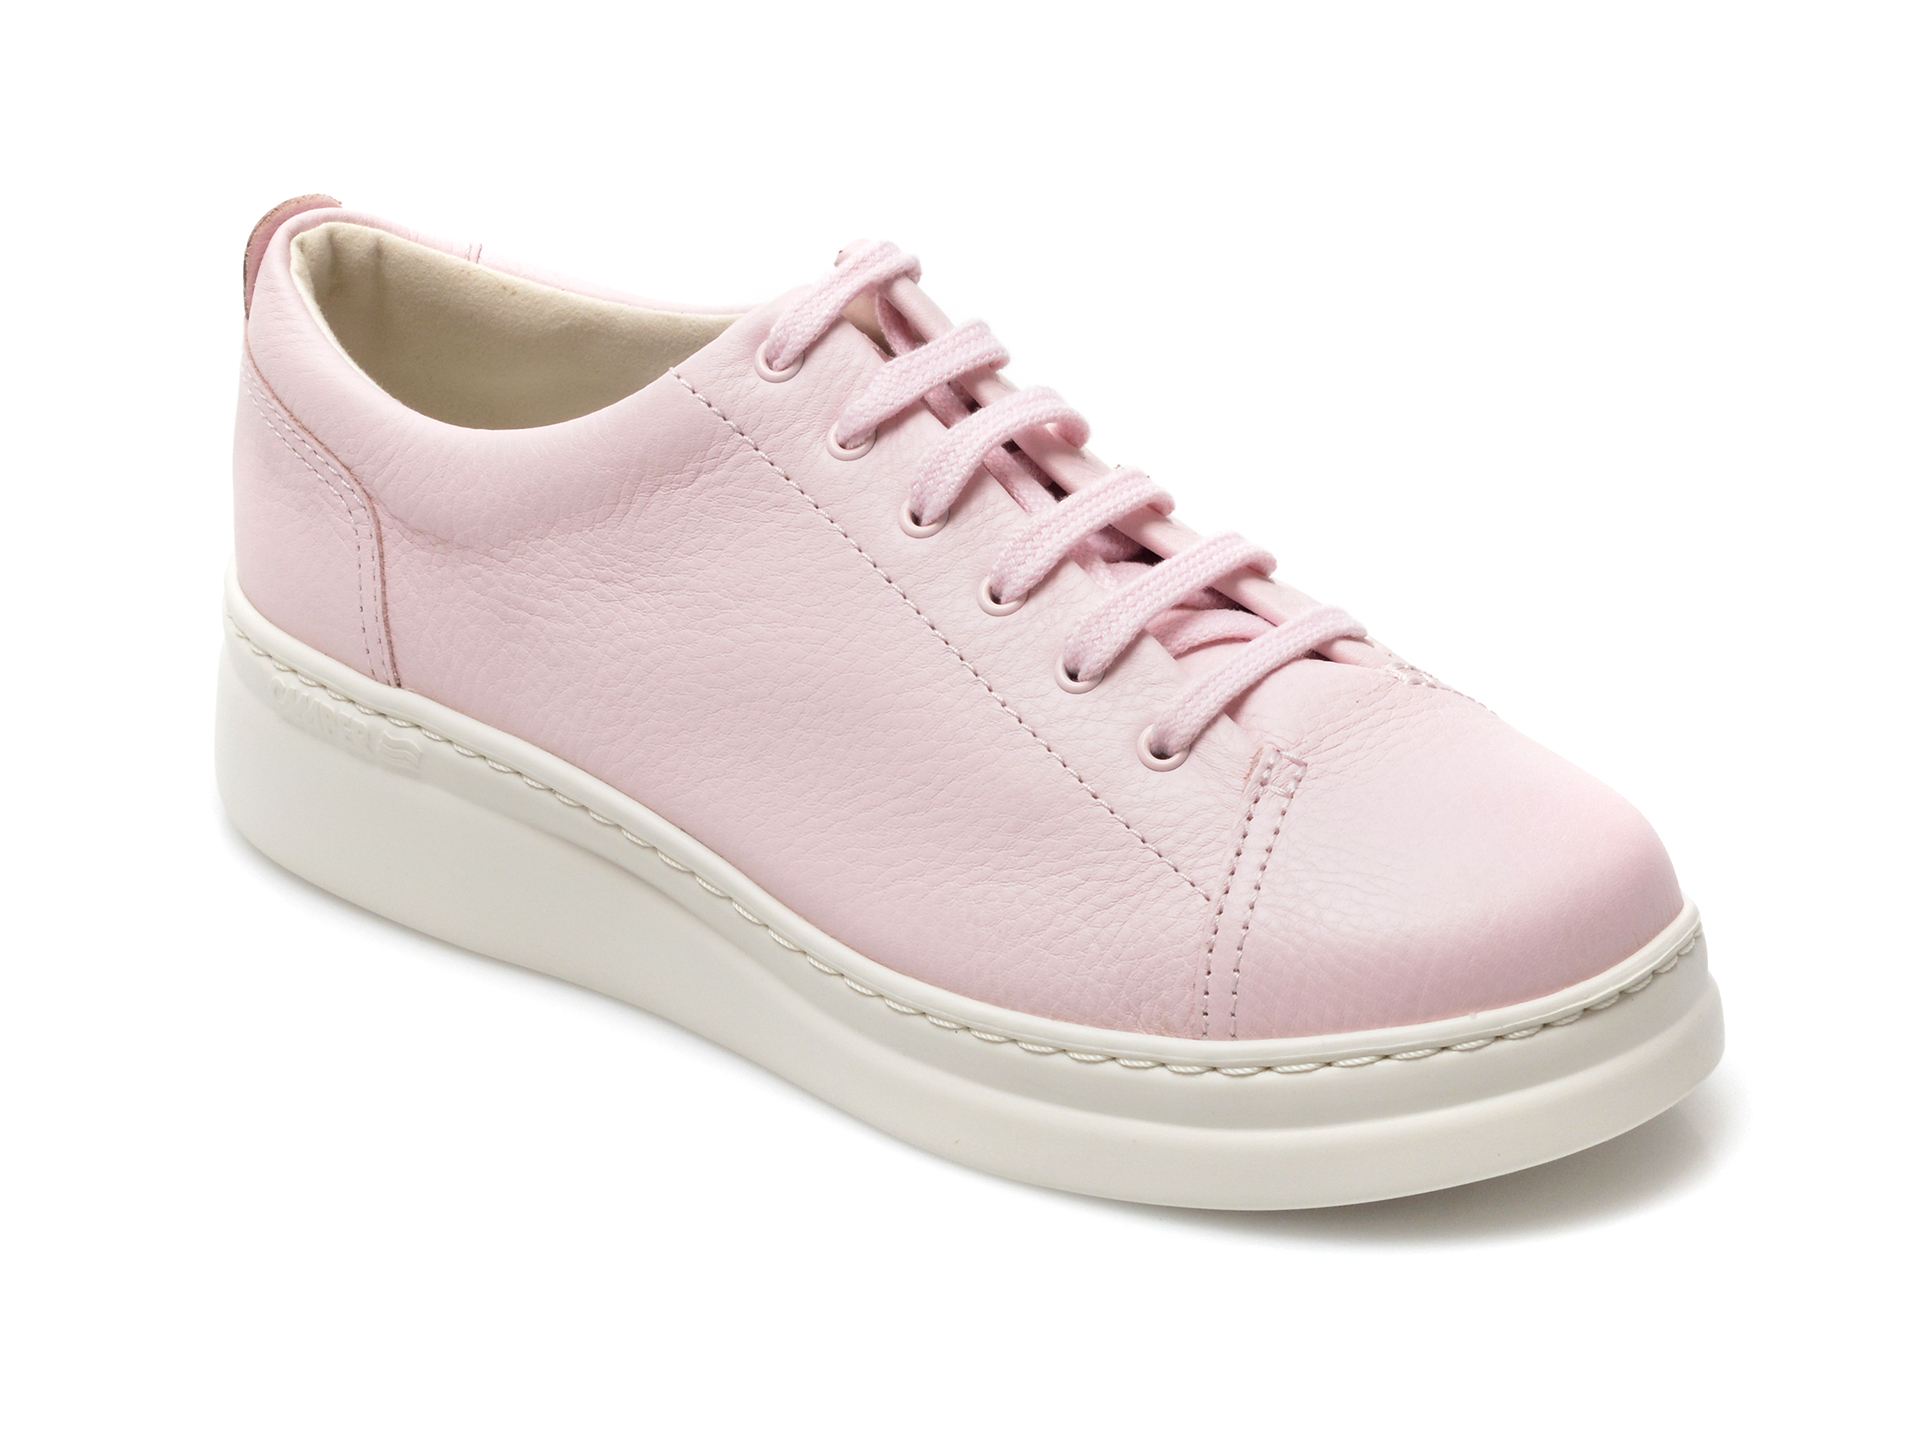 Pantofi CAMPER roz, K200508, din piele naturala